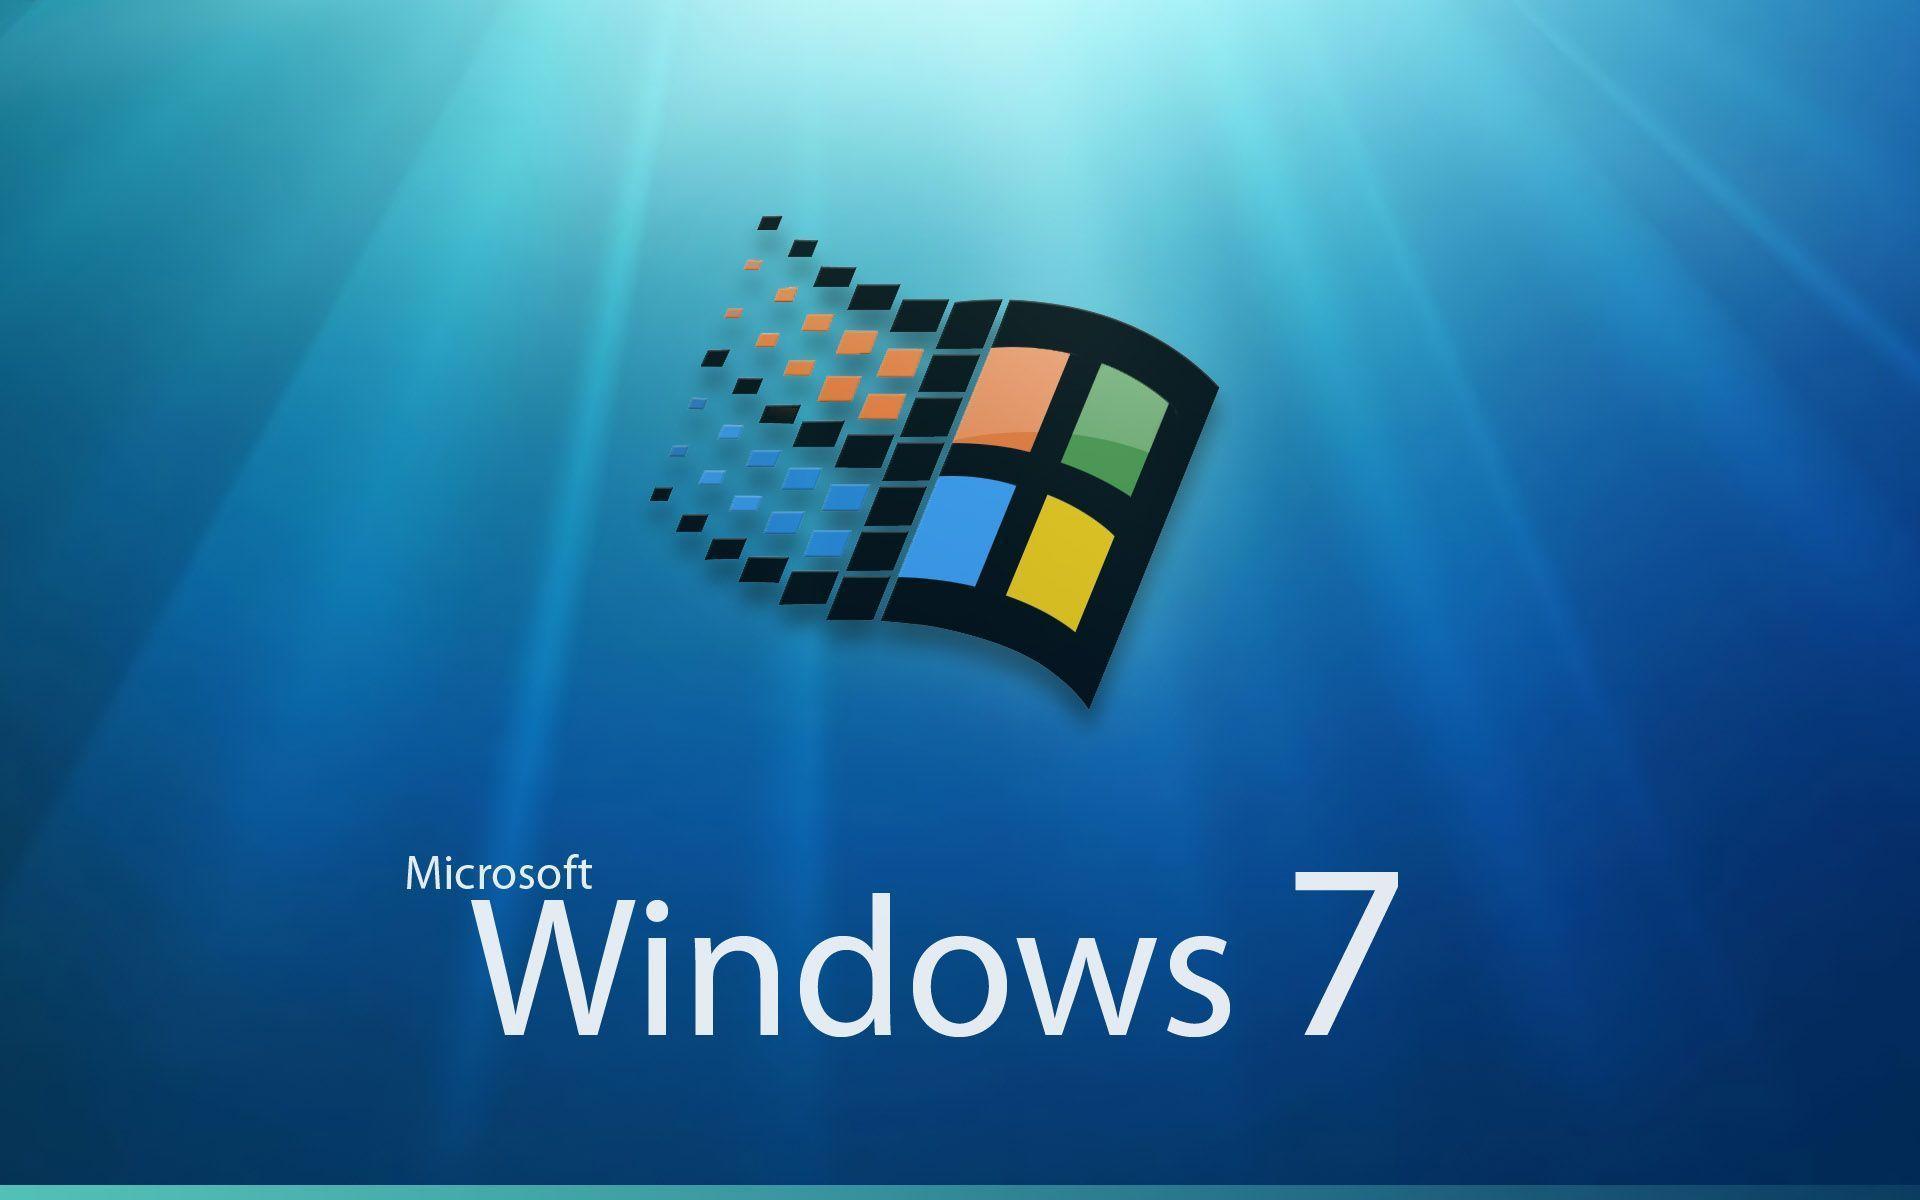 Microsoft Windows 7 logo Desktop wallpaper 1600x1200